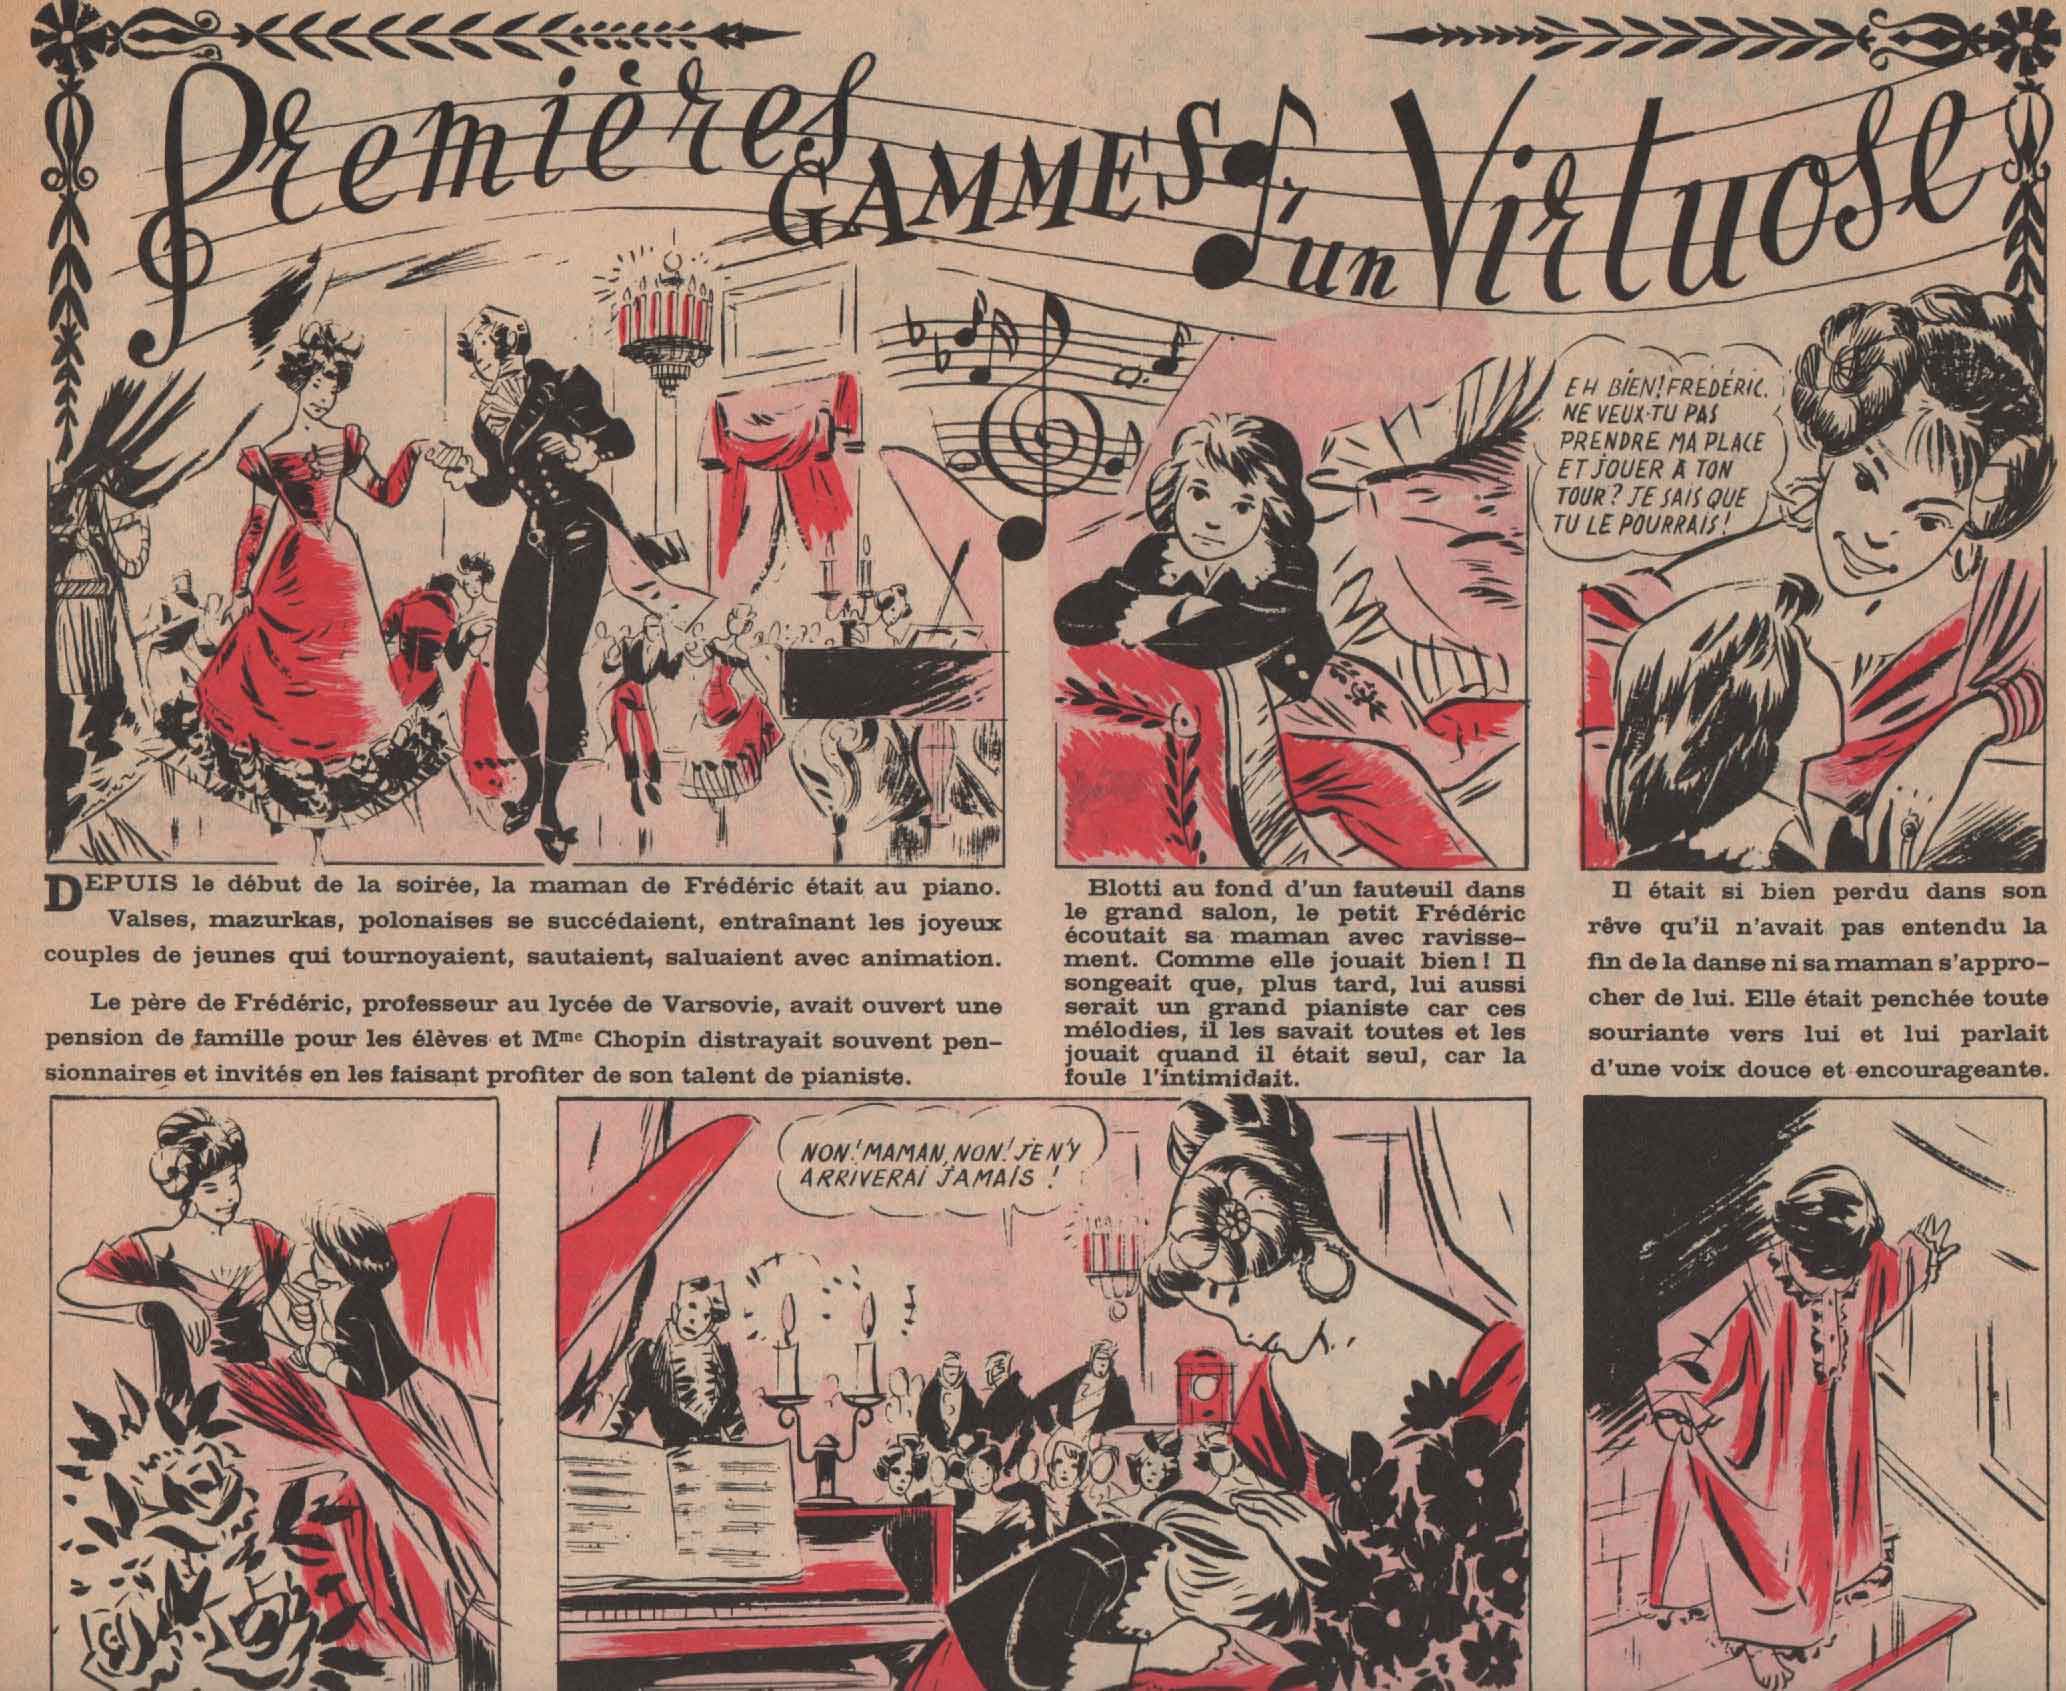 « Premières gammes d’un virtuose » Fripounet et Marisette n° 15 (08-04-1956).